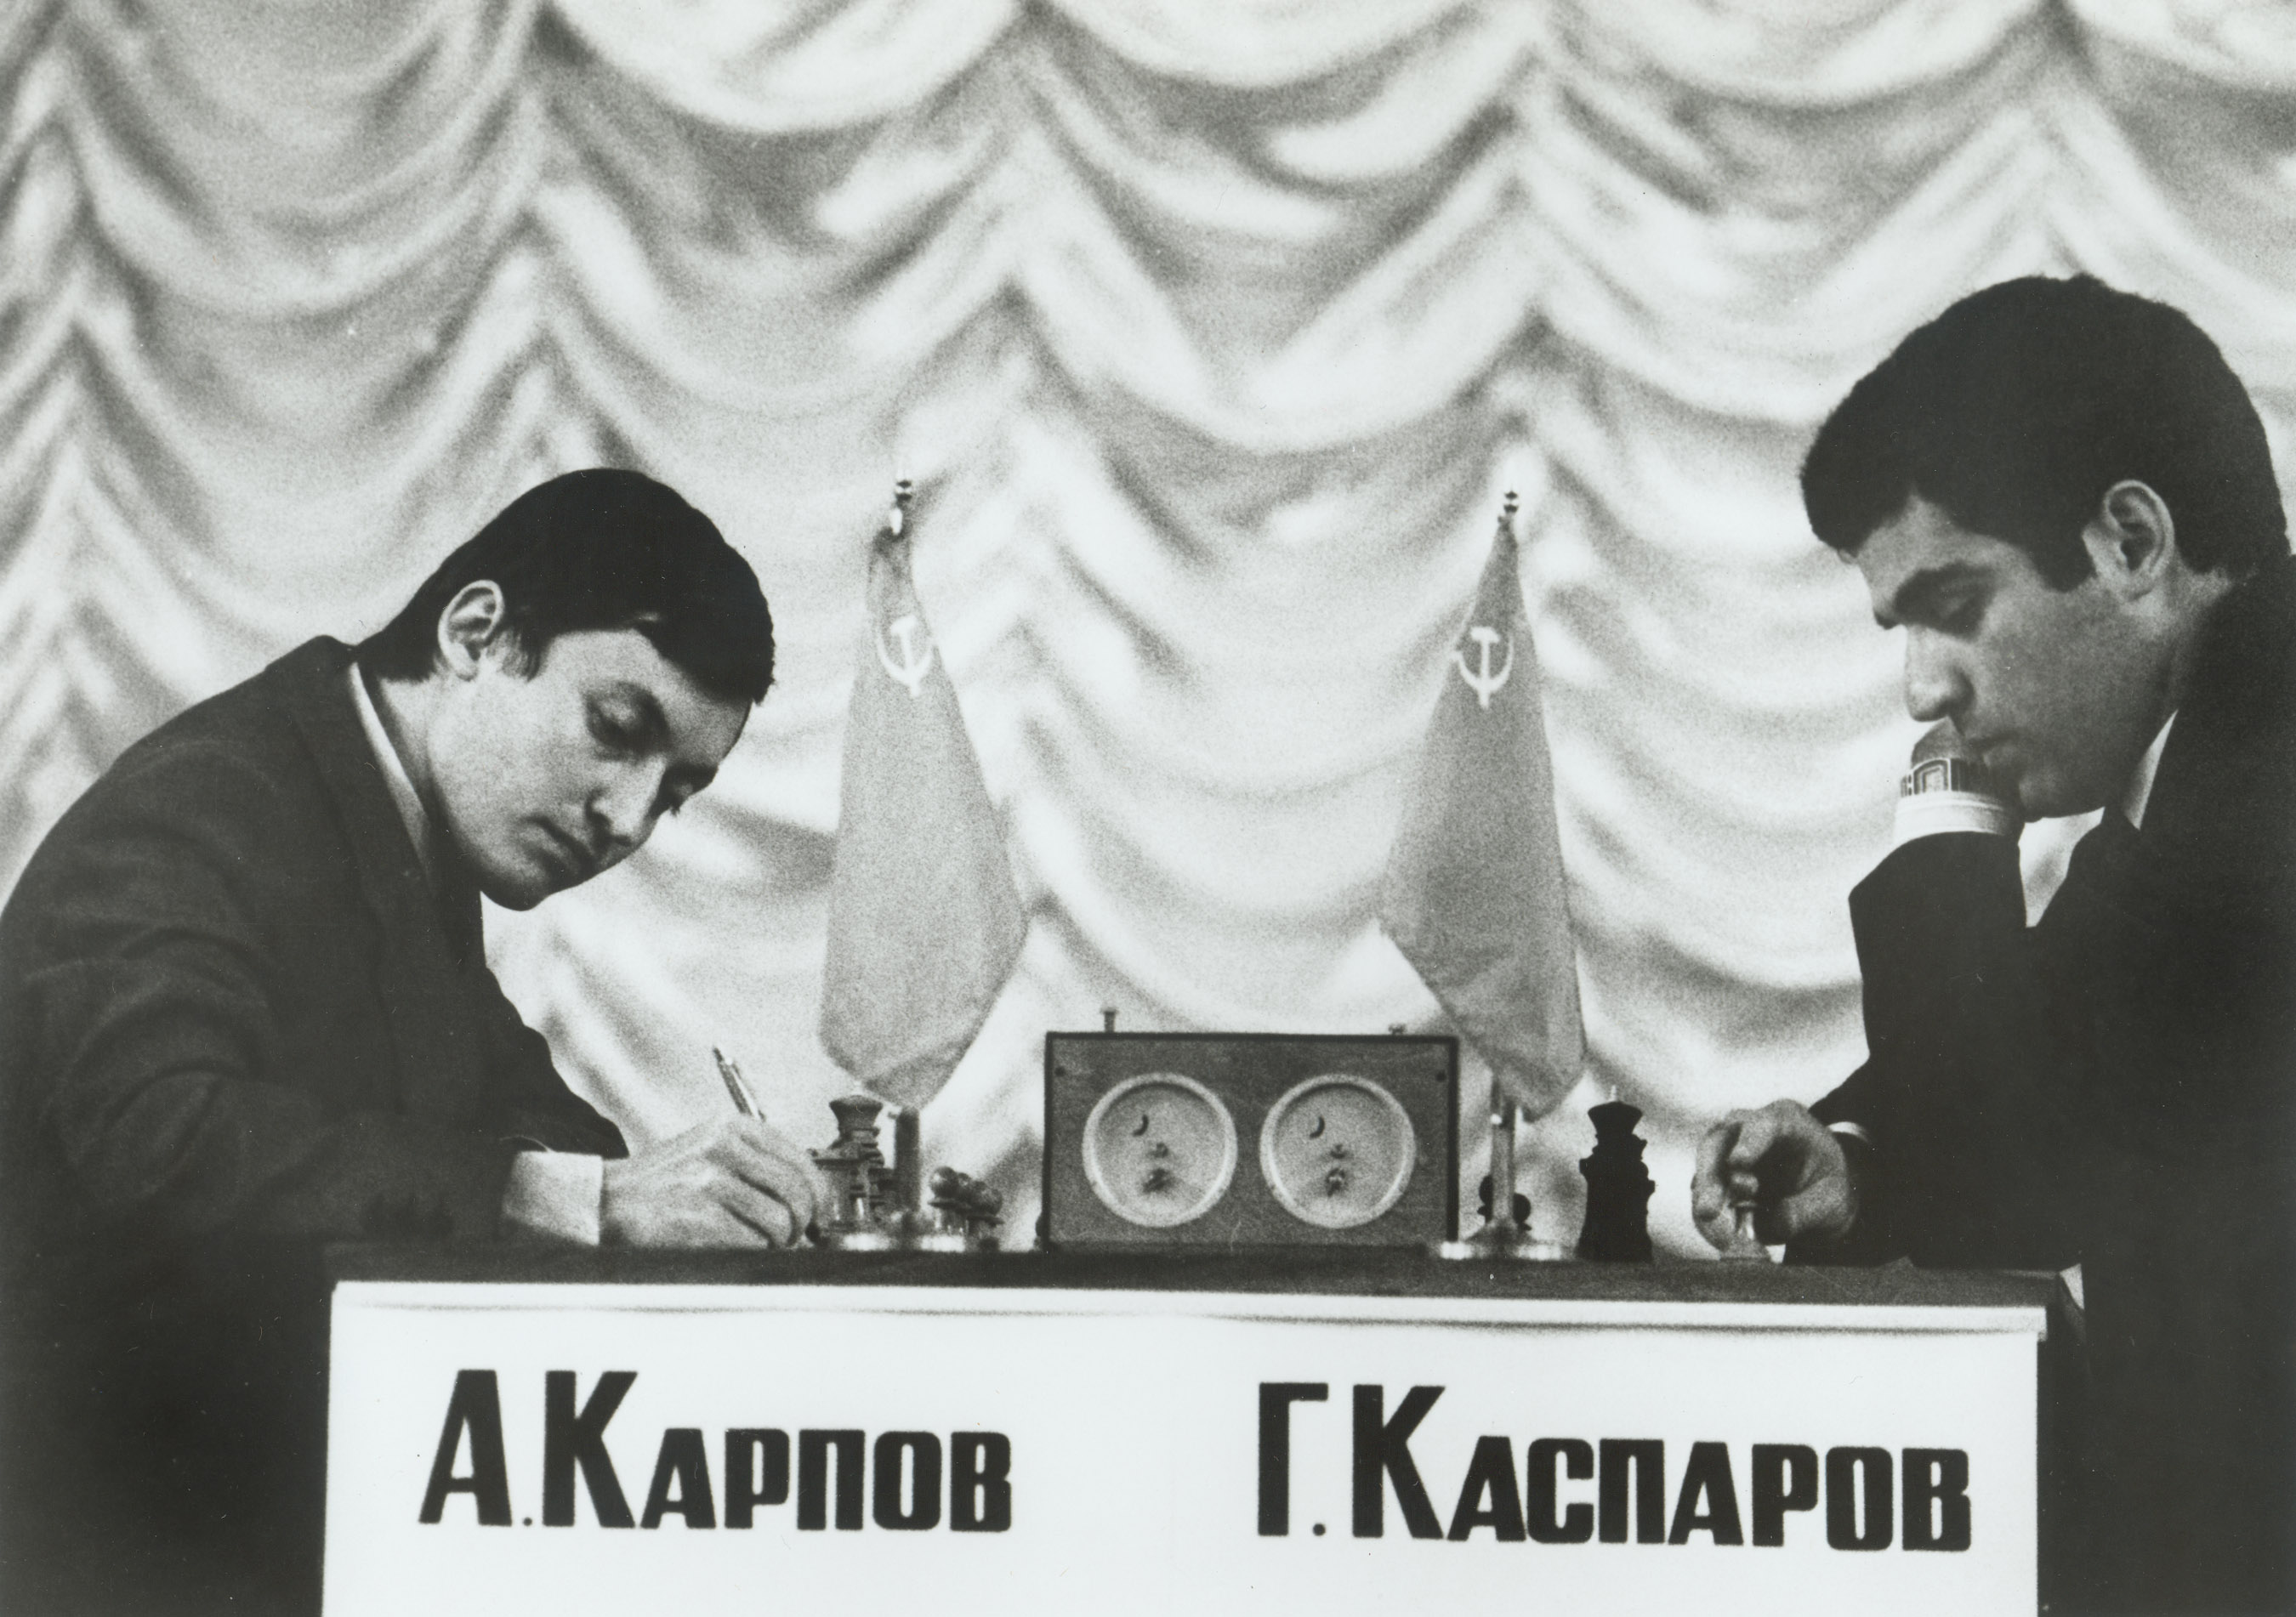 Karpov y Kasparov durante un partido en Rusia en 1990 (Everett/Shutterstock)